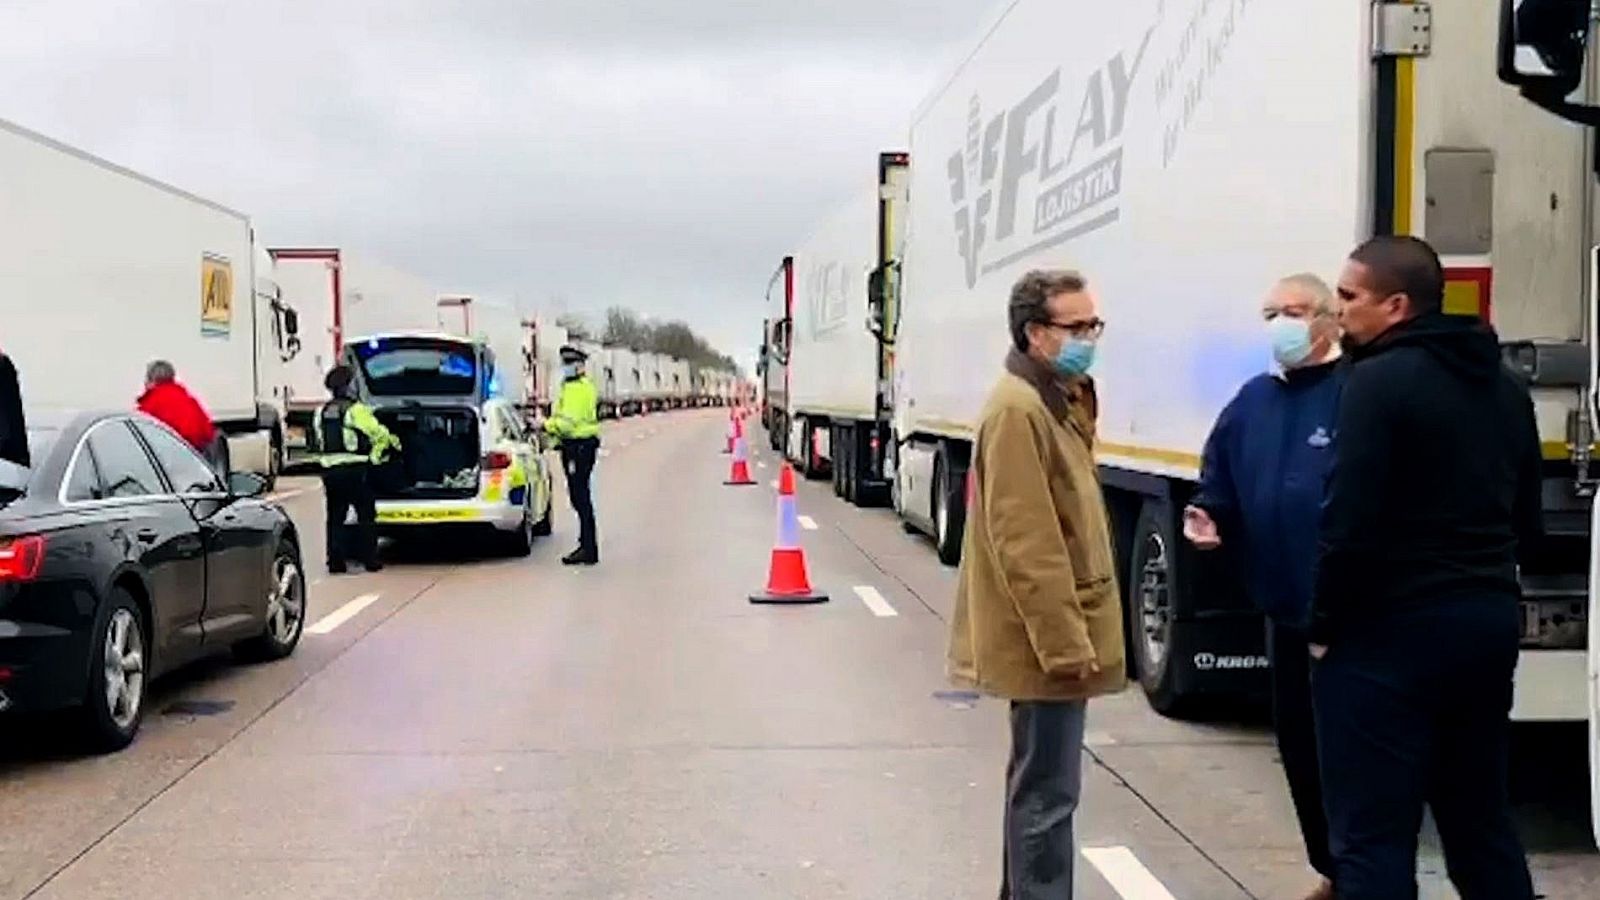 Diplomáticos de la embajada en Londres ofrecen ayuda a los camioneros españoles atrapados en Dover